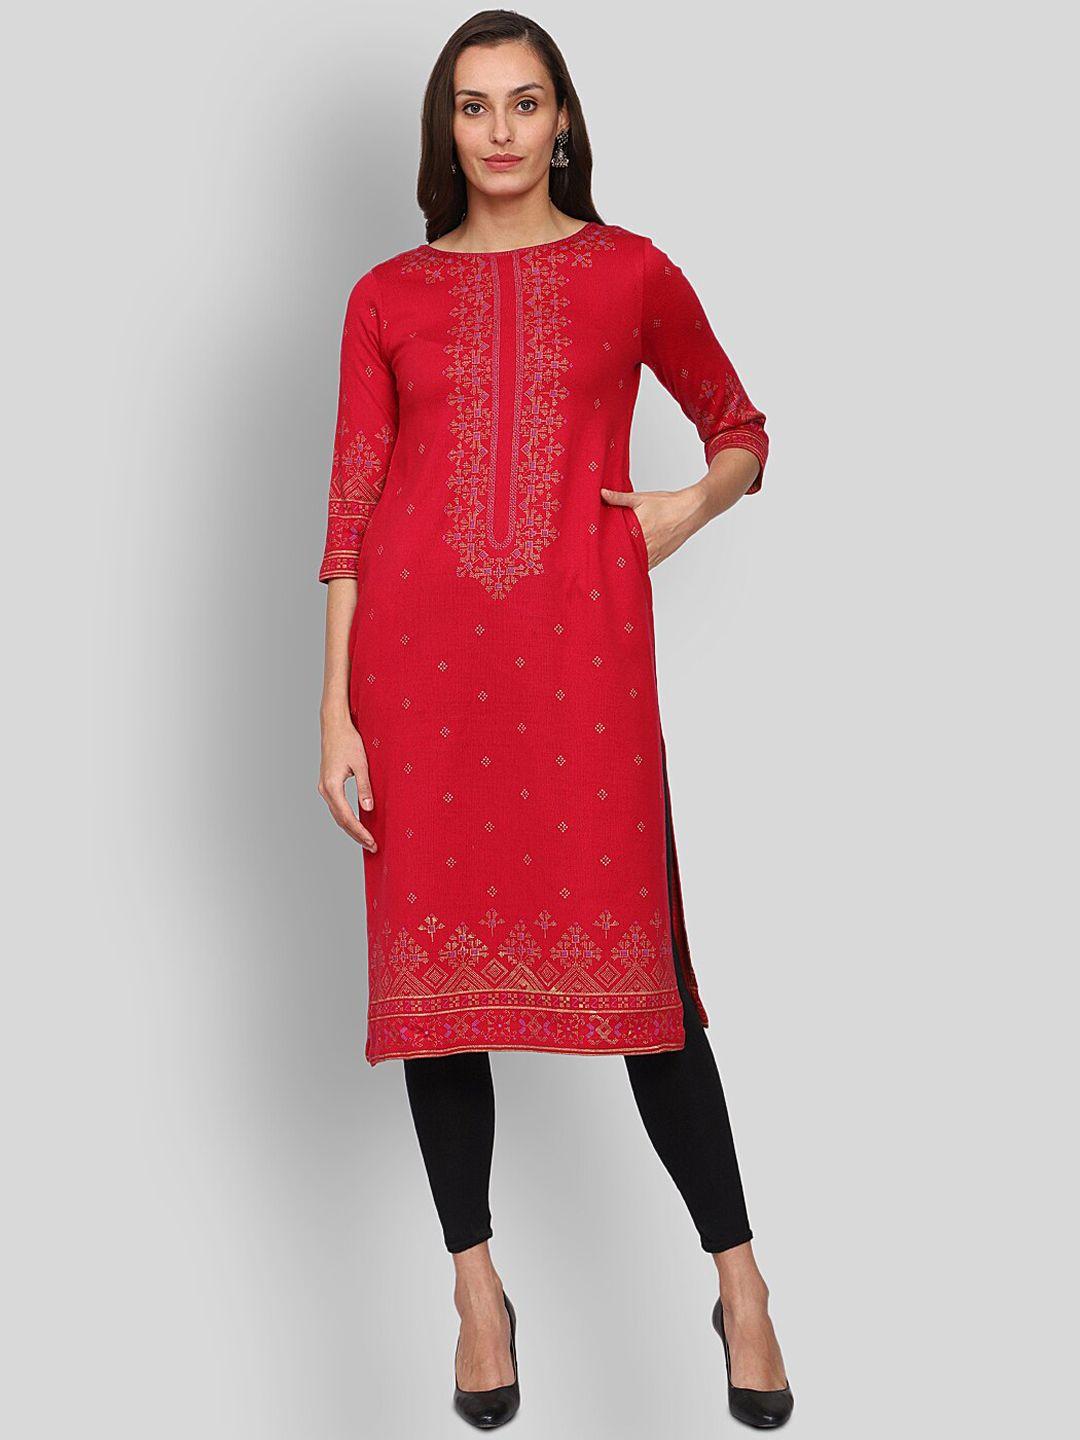 shereen women red ethnic printed straight woolen kurta